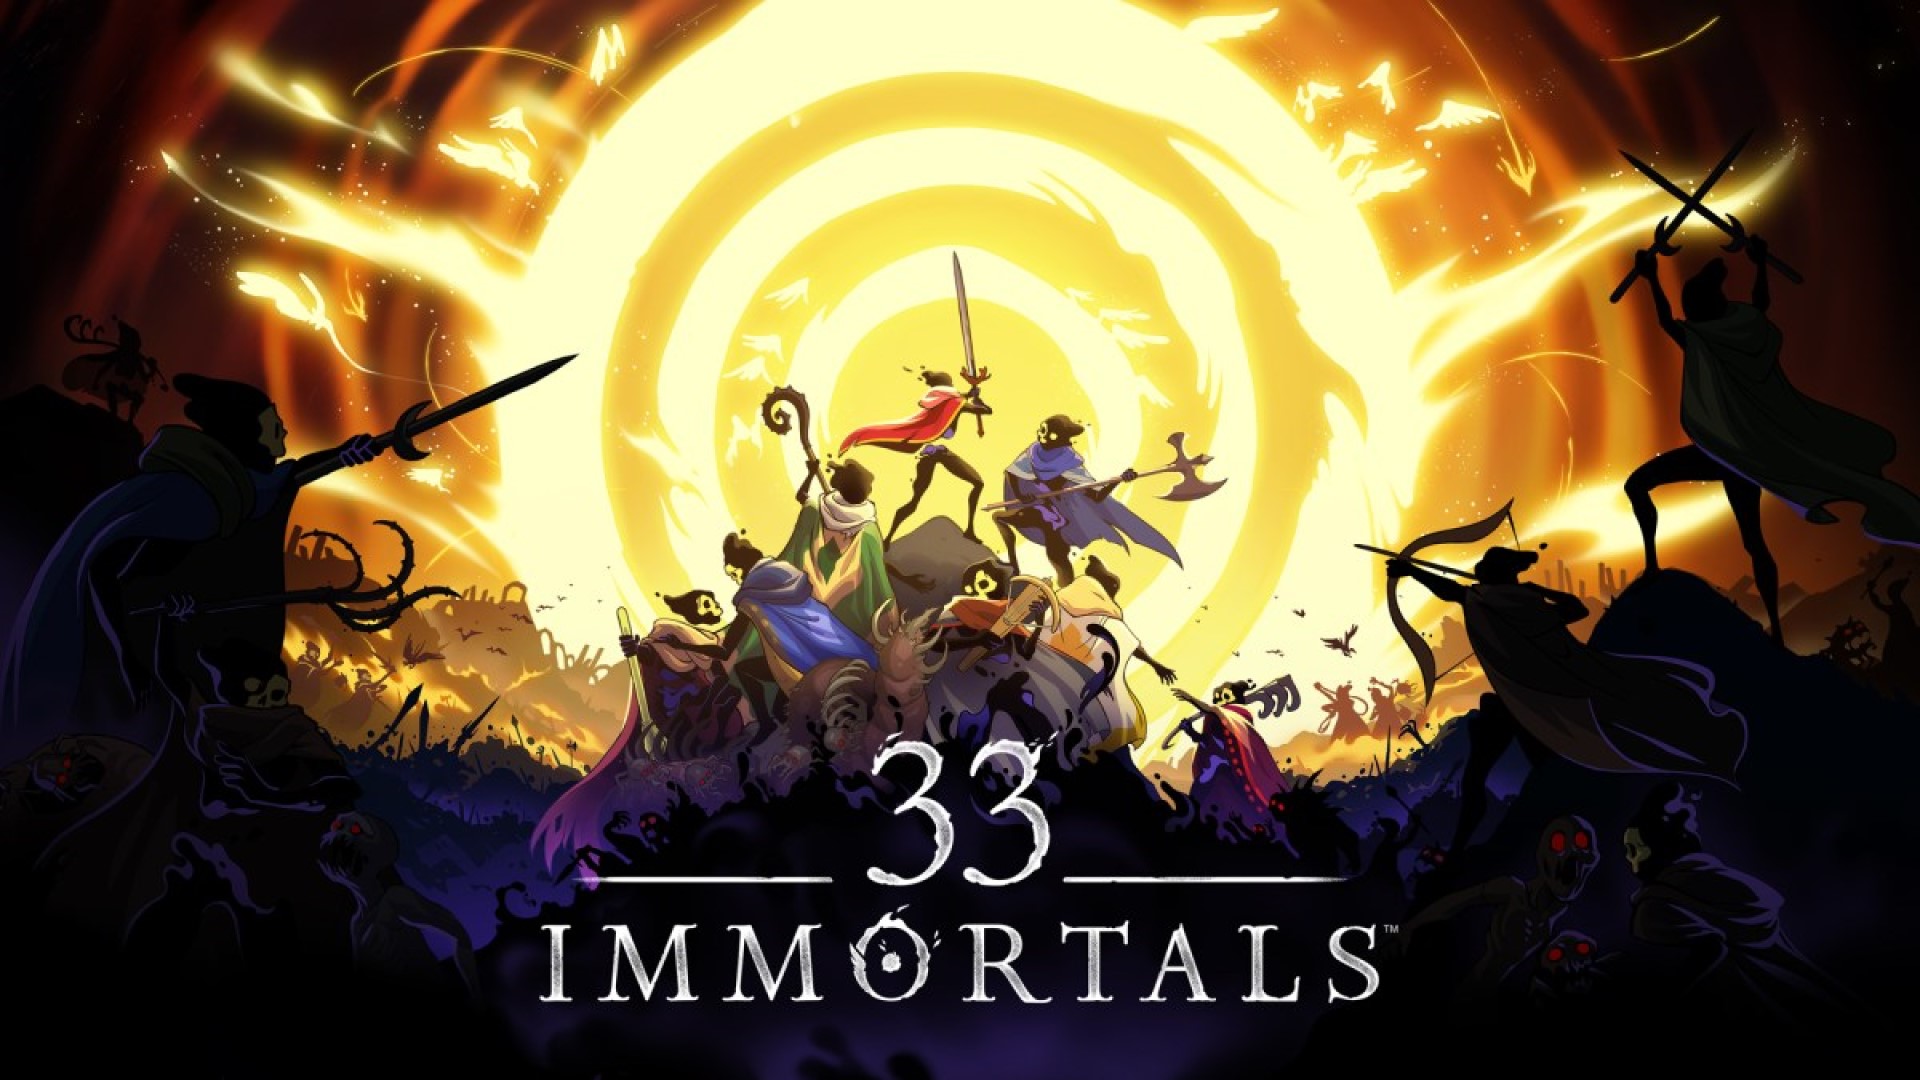 Розробники 33 Immortals опублікували новий трейлер з ігровим процесом та повідомили дату початку закритого тестування гри